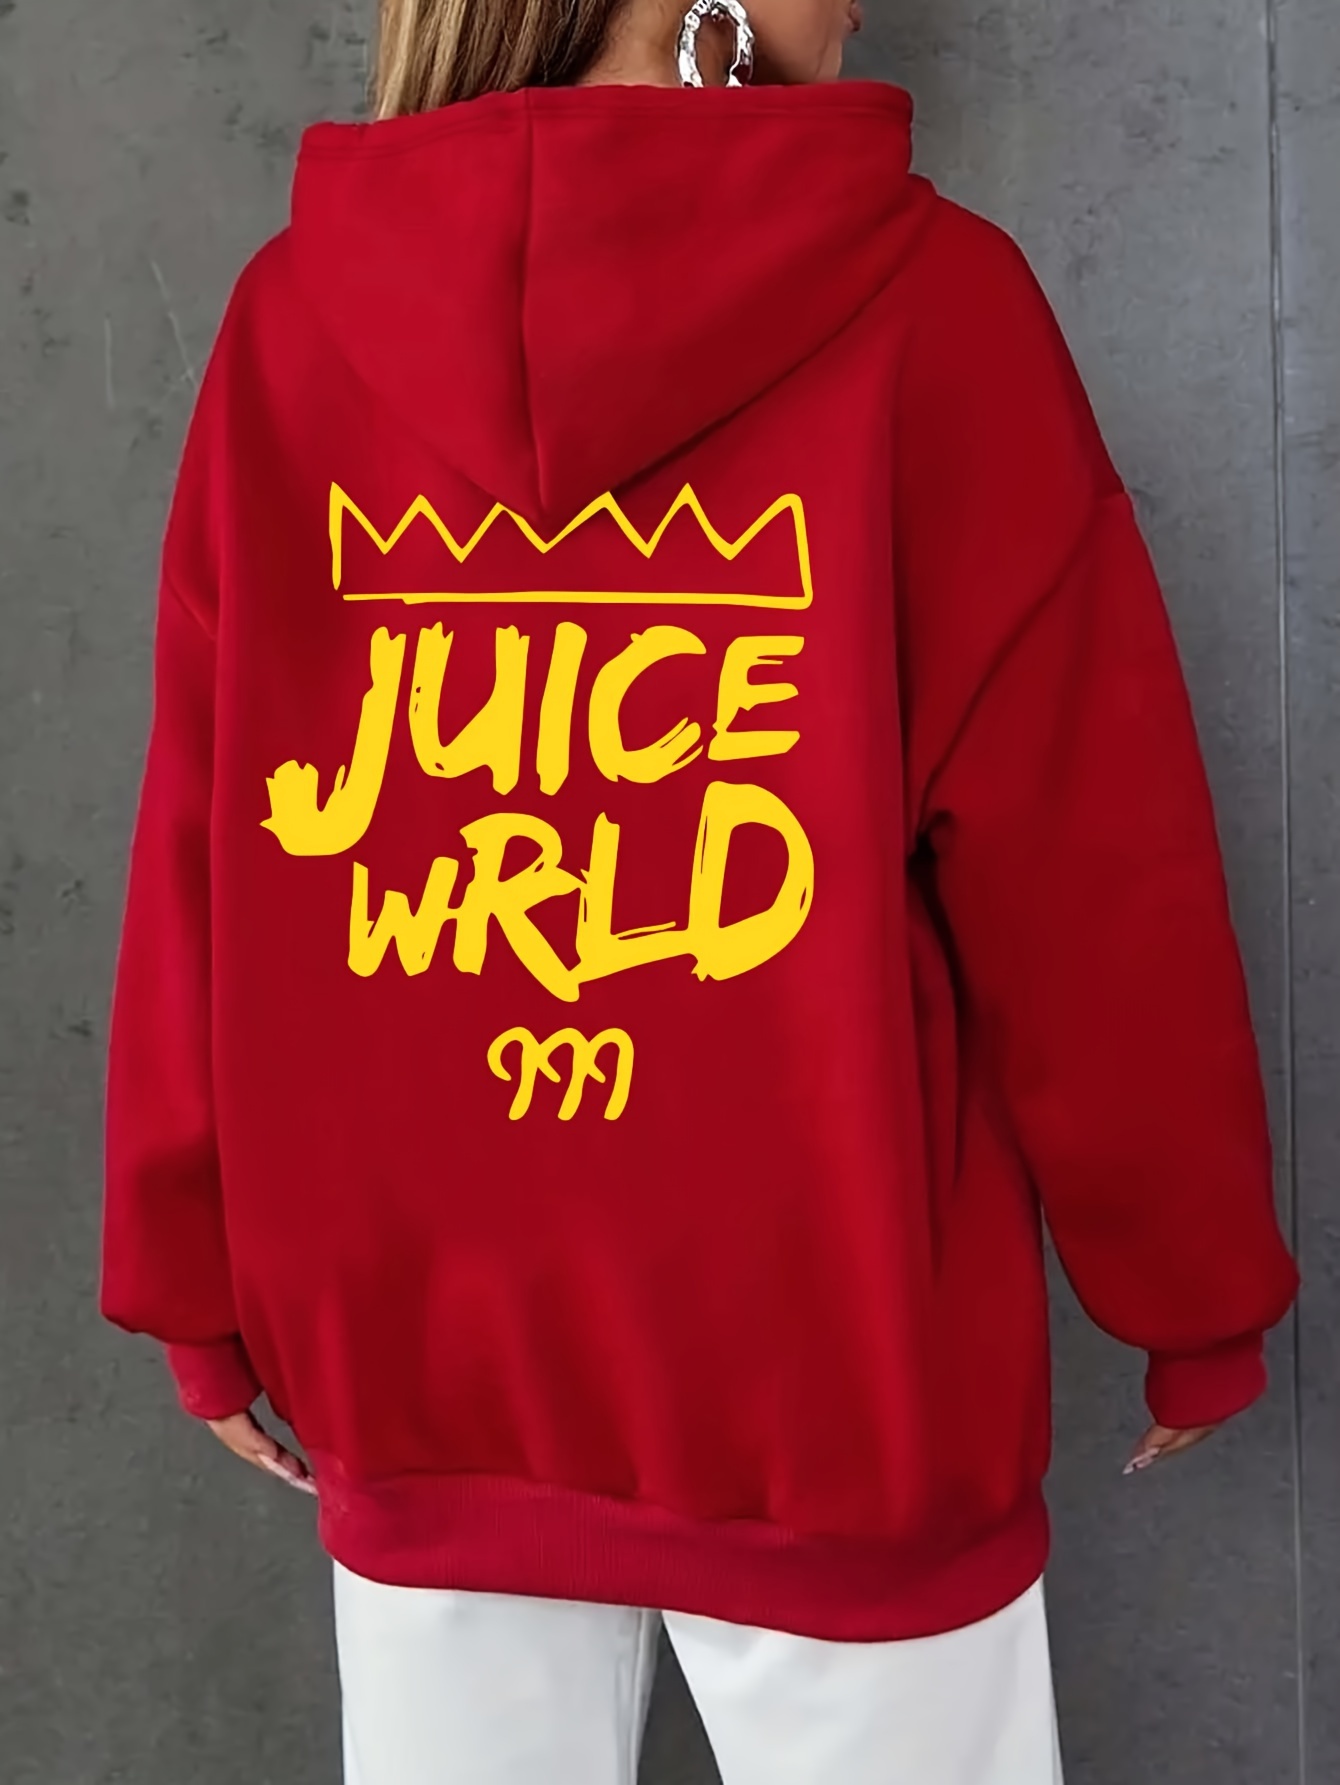 juice wrld clothing from temu｜TikTok Search